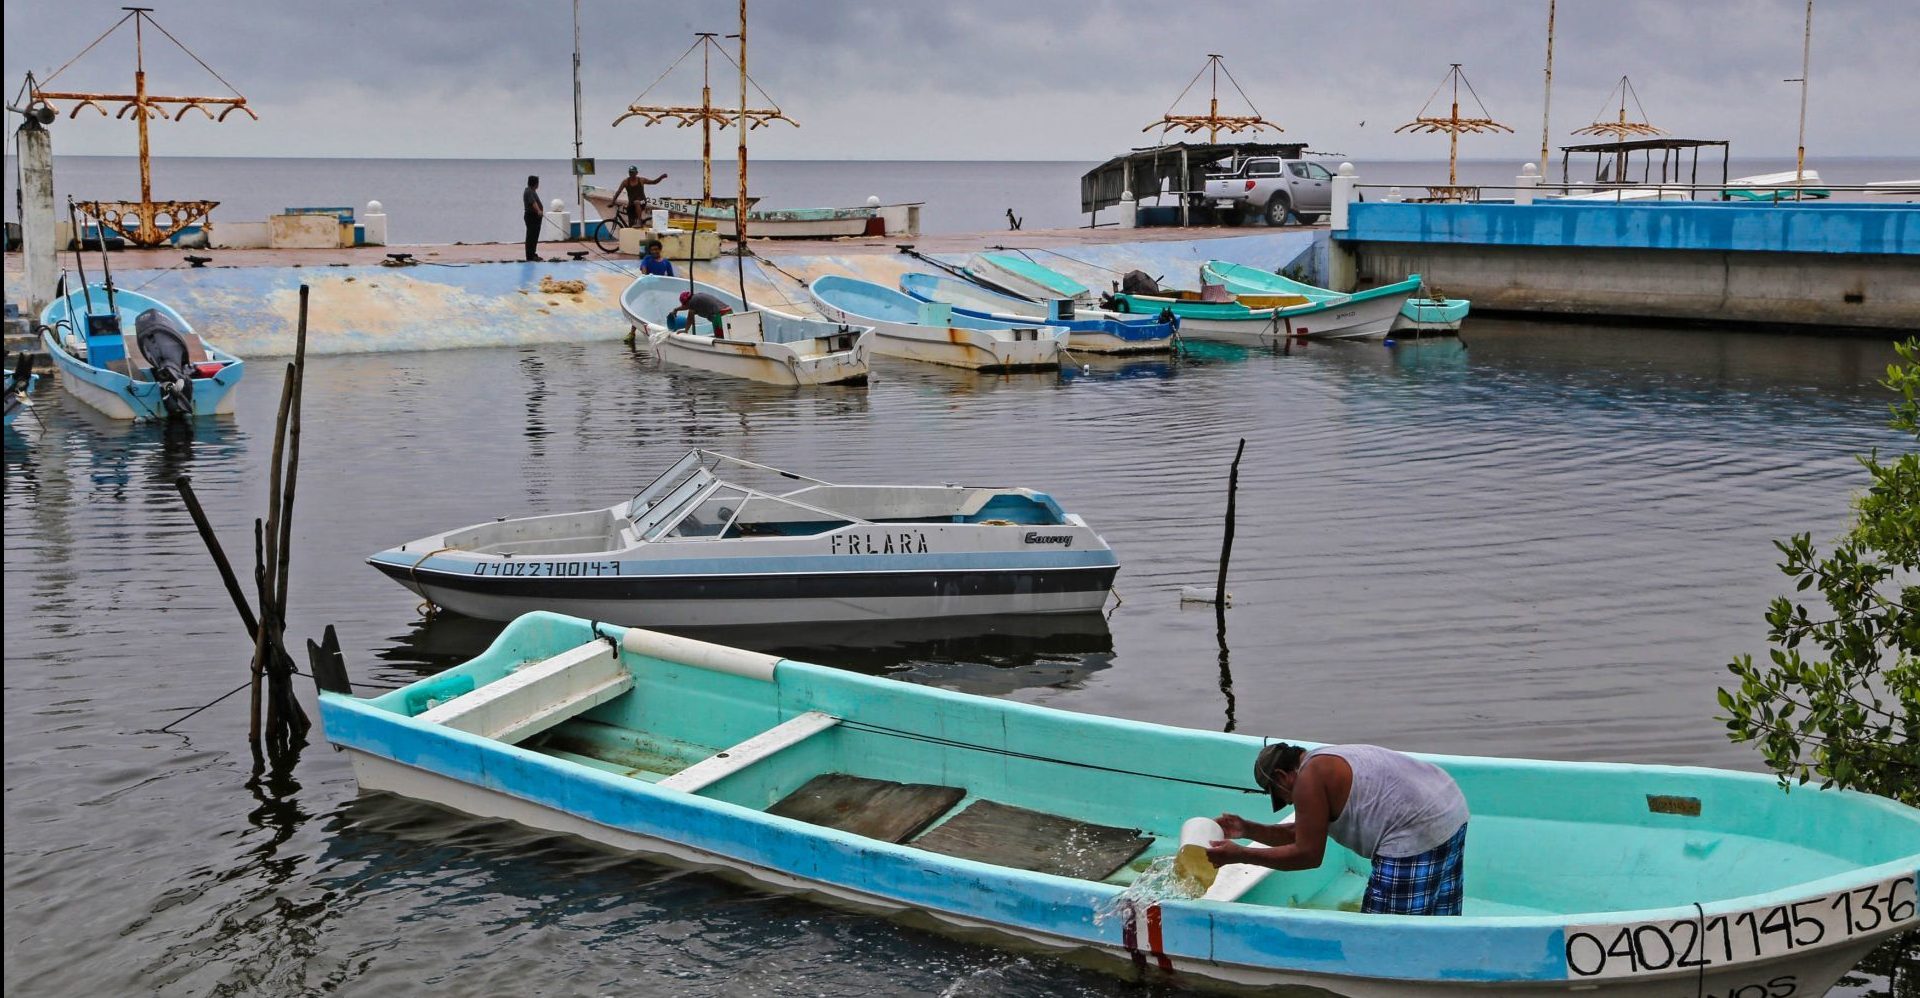 EU emite alerta de viaje para Campeche por ataques a embarcaciones